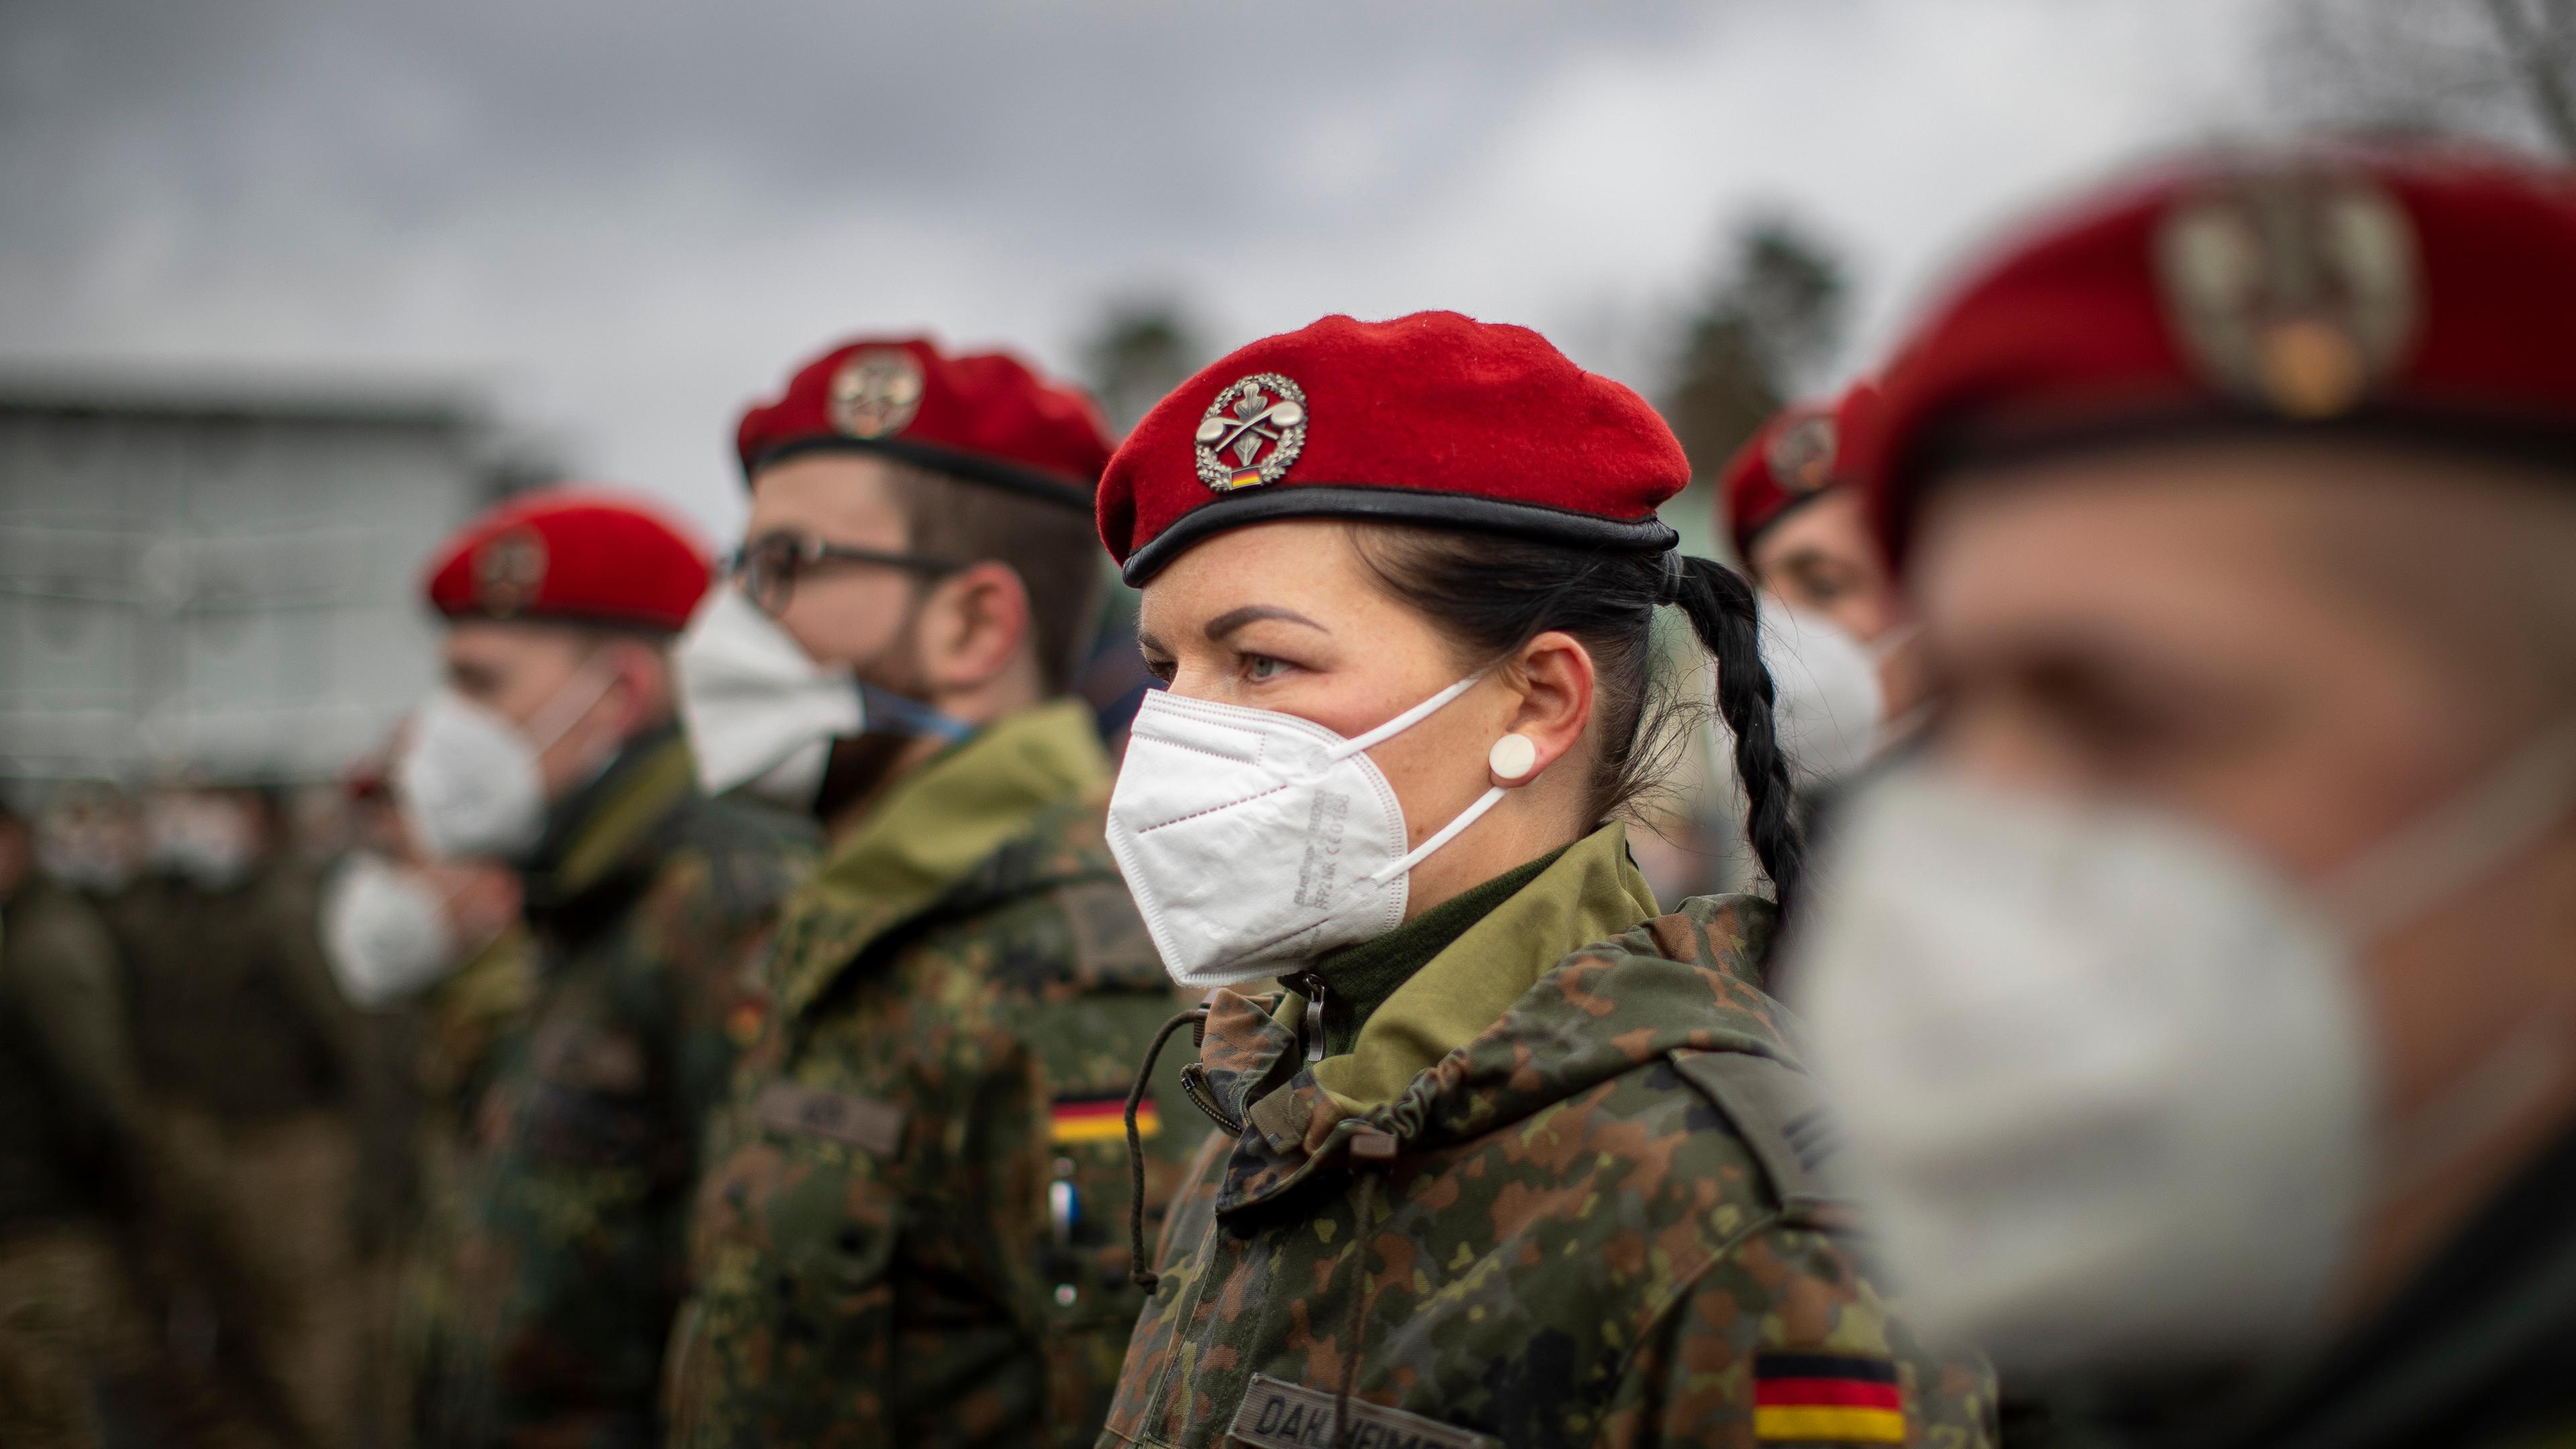 Deutsche Bundeswehrsoldaten des NATO-Bataillons für verstärkte Vorwärtspräsenz warten auf die deutsche Verteidigungsministerin Christine Lambrecht bei ihrer Ankunft auf dem Militärstützpunkt Rukla, etwa 100 km westlich der litauischen Hauptstadt Vilnius, am Dienstag, 22. Februar 2022.